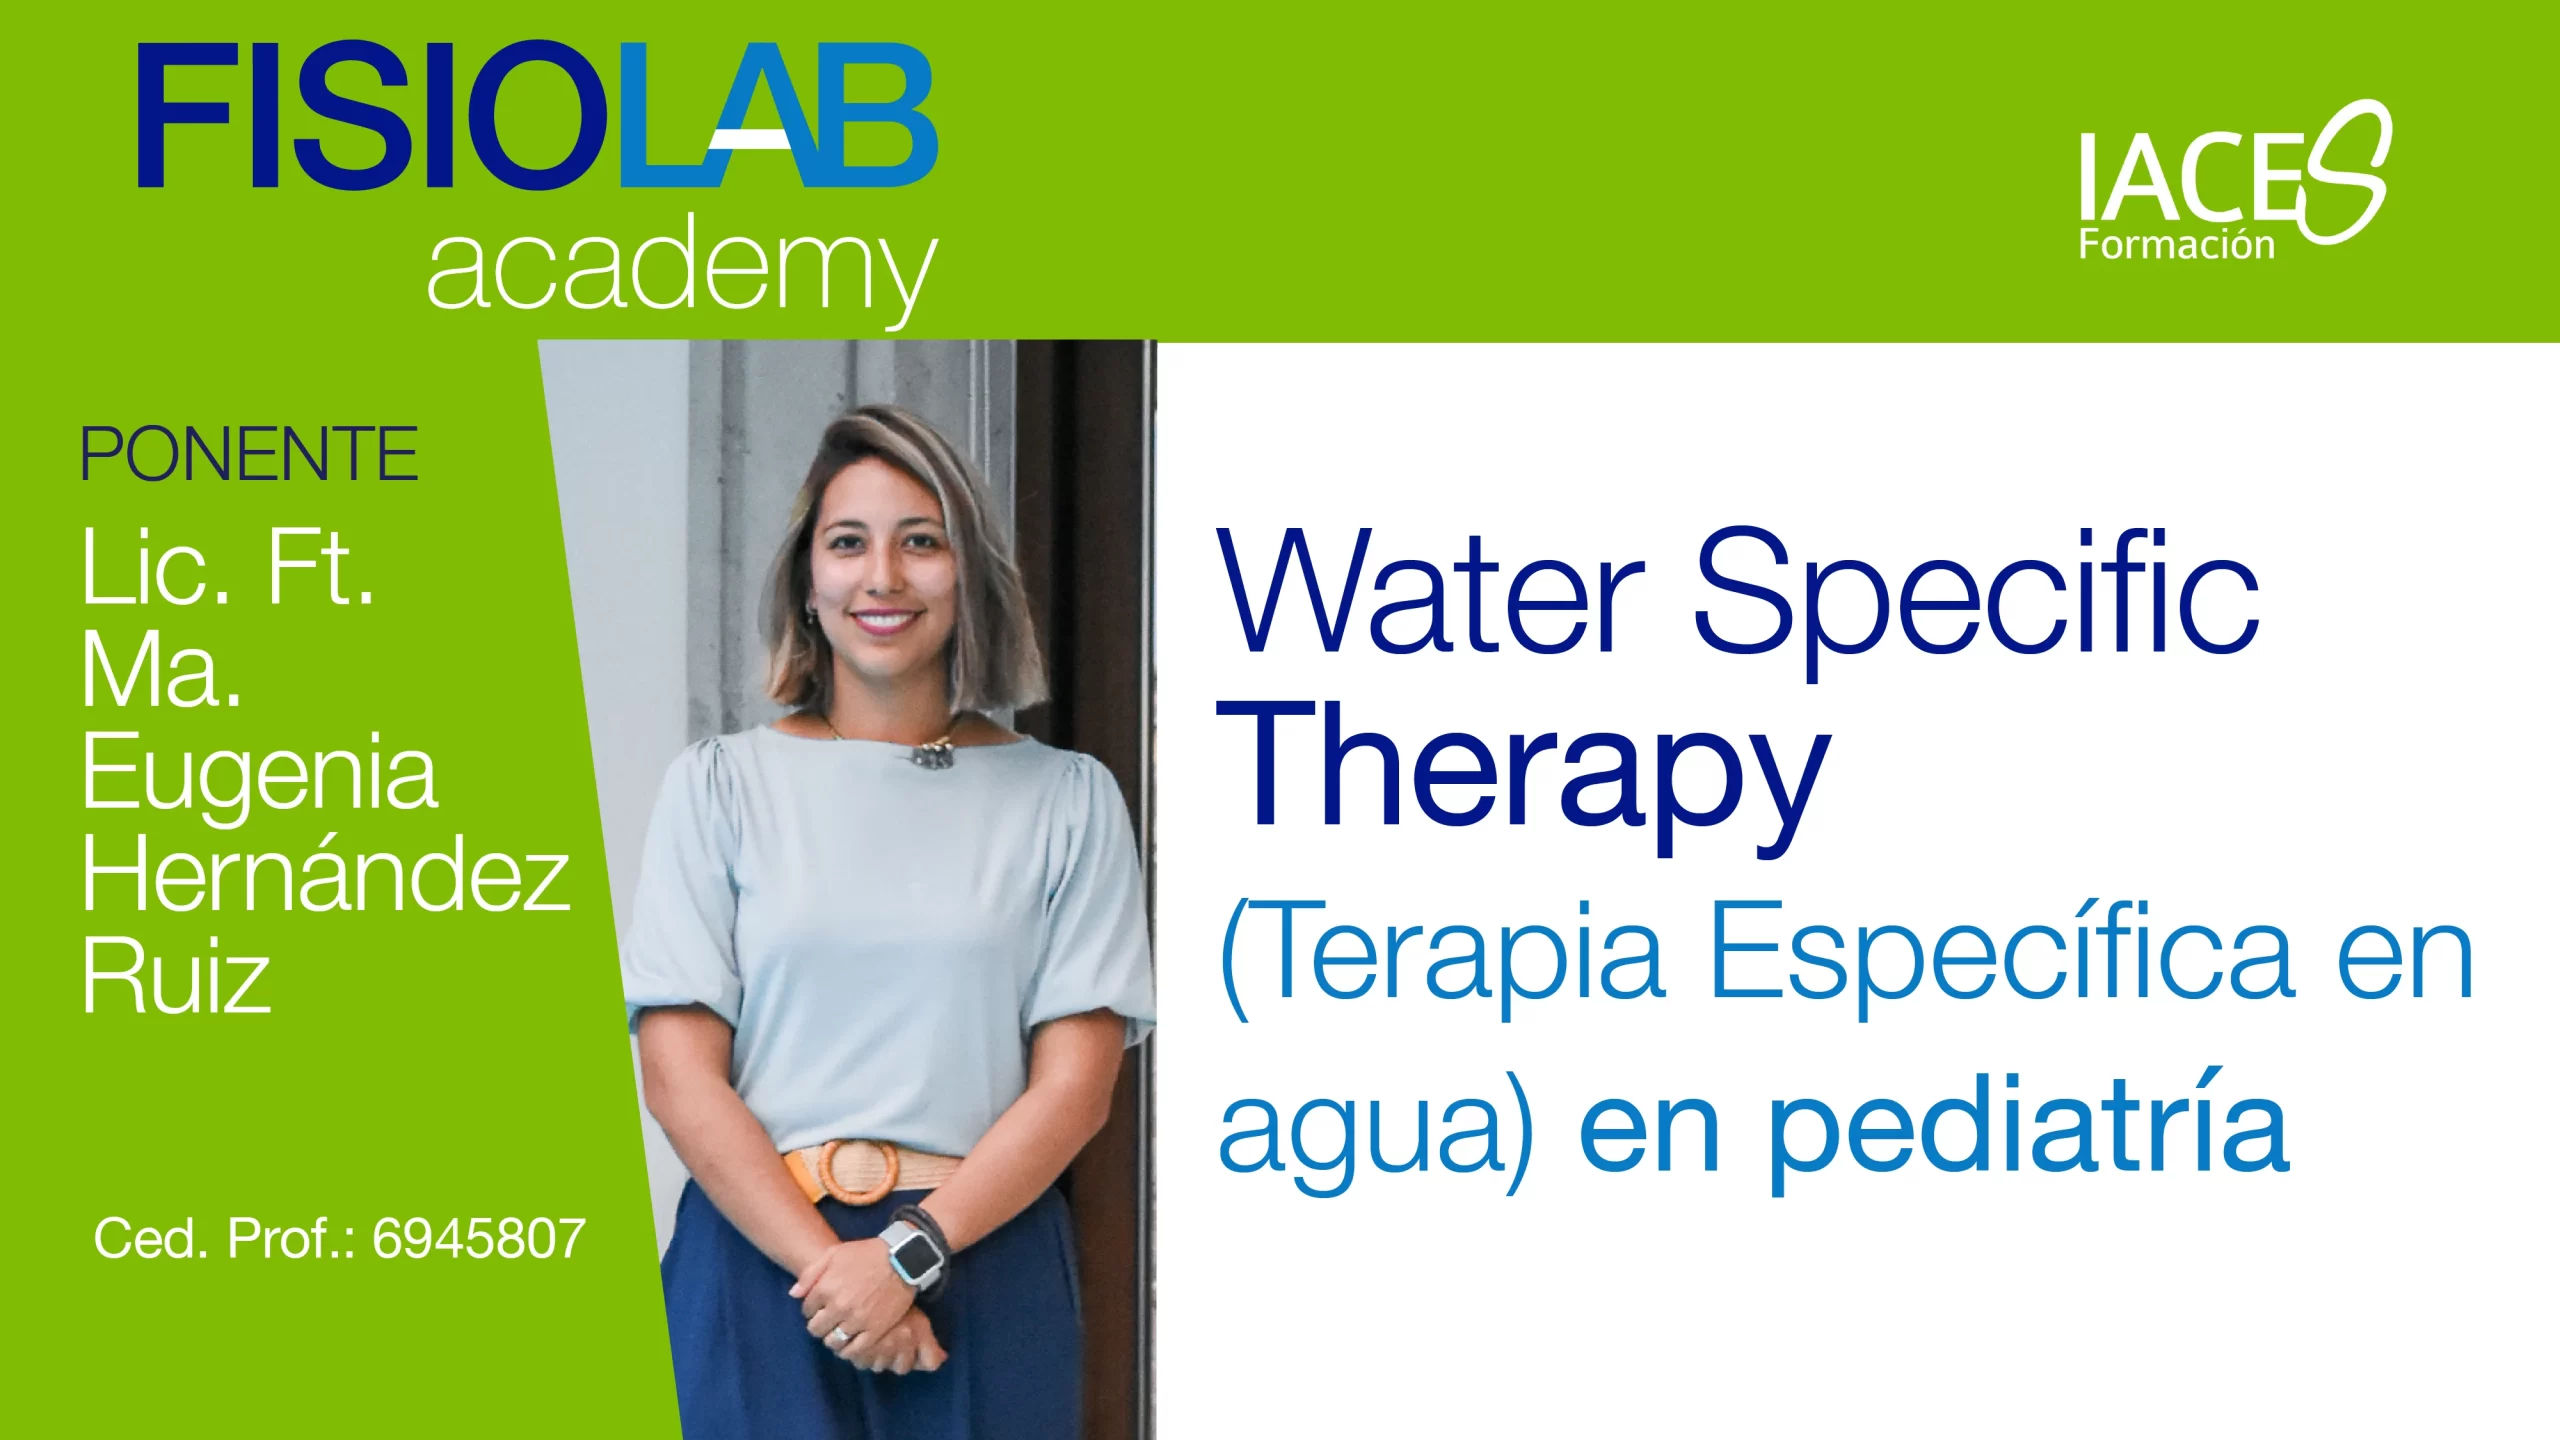 WEBINAR - "Water Specific Therapy (Terapia Específica en agua) en pediatría"